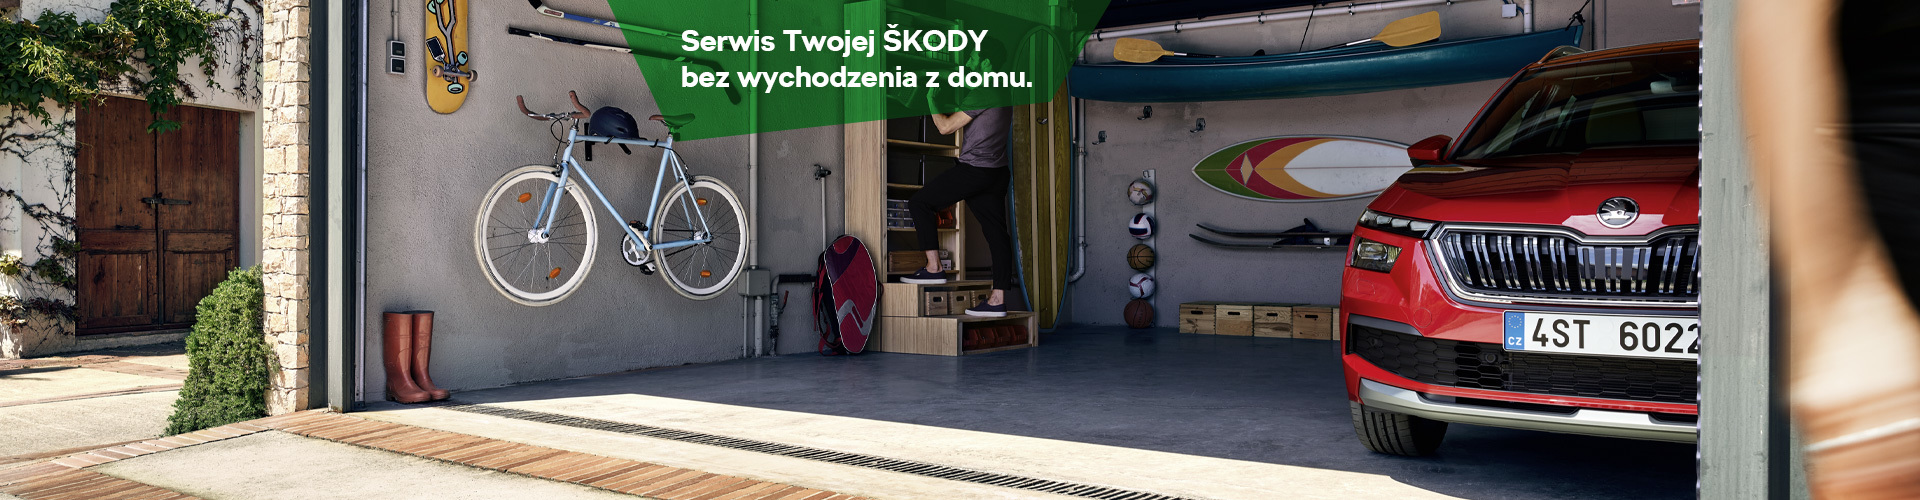 Serwis SKODA Warszawa - Porsche Połczyńska w Warszawie